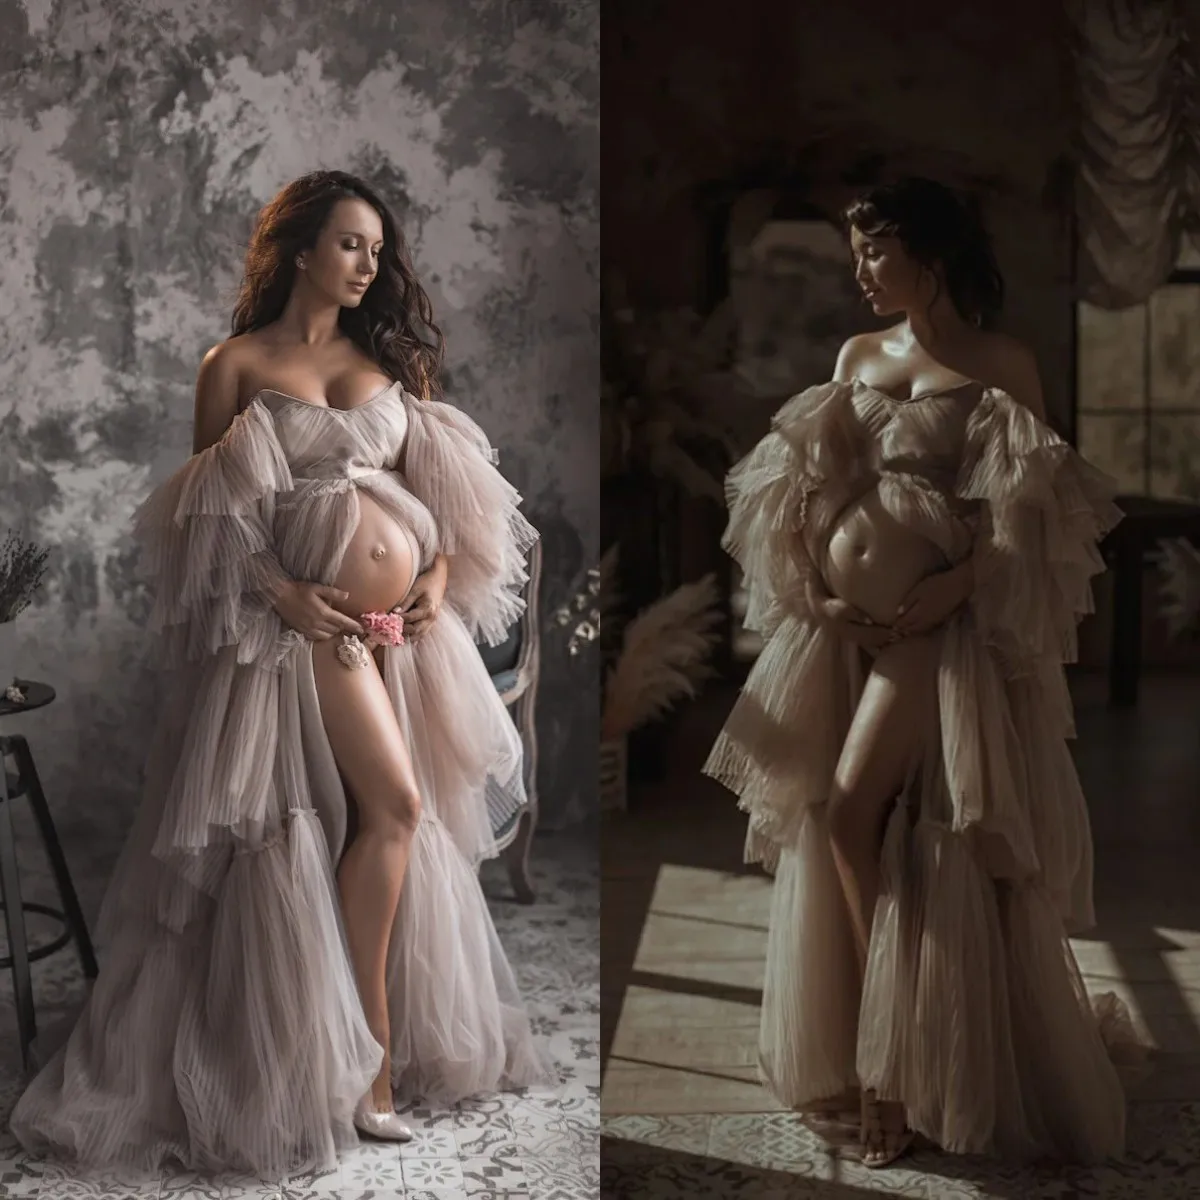 

Платье • платье для беременных для фотосессии или детского душа • платье для беременных • модное платье для беременных • платье для подру...